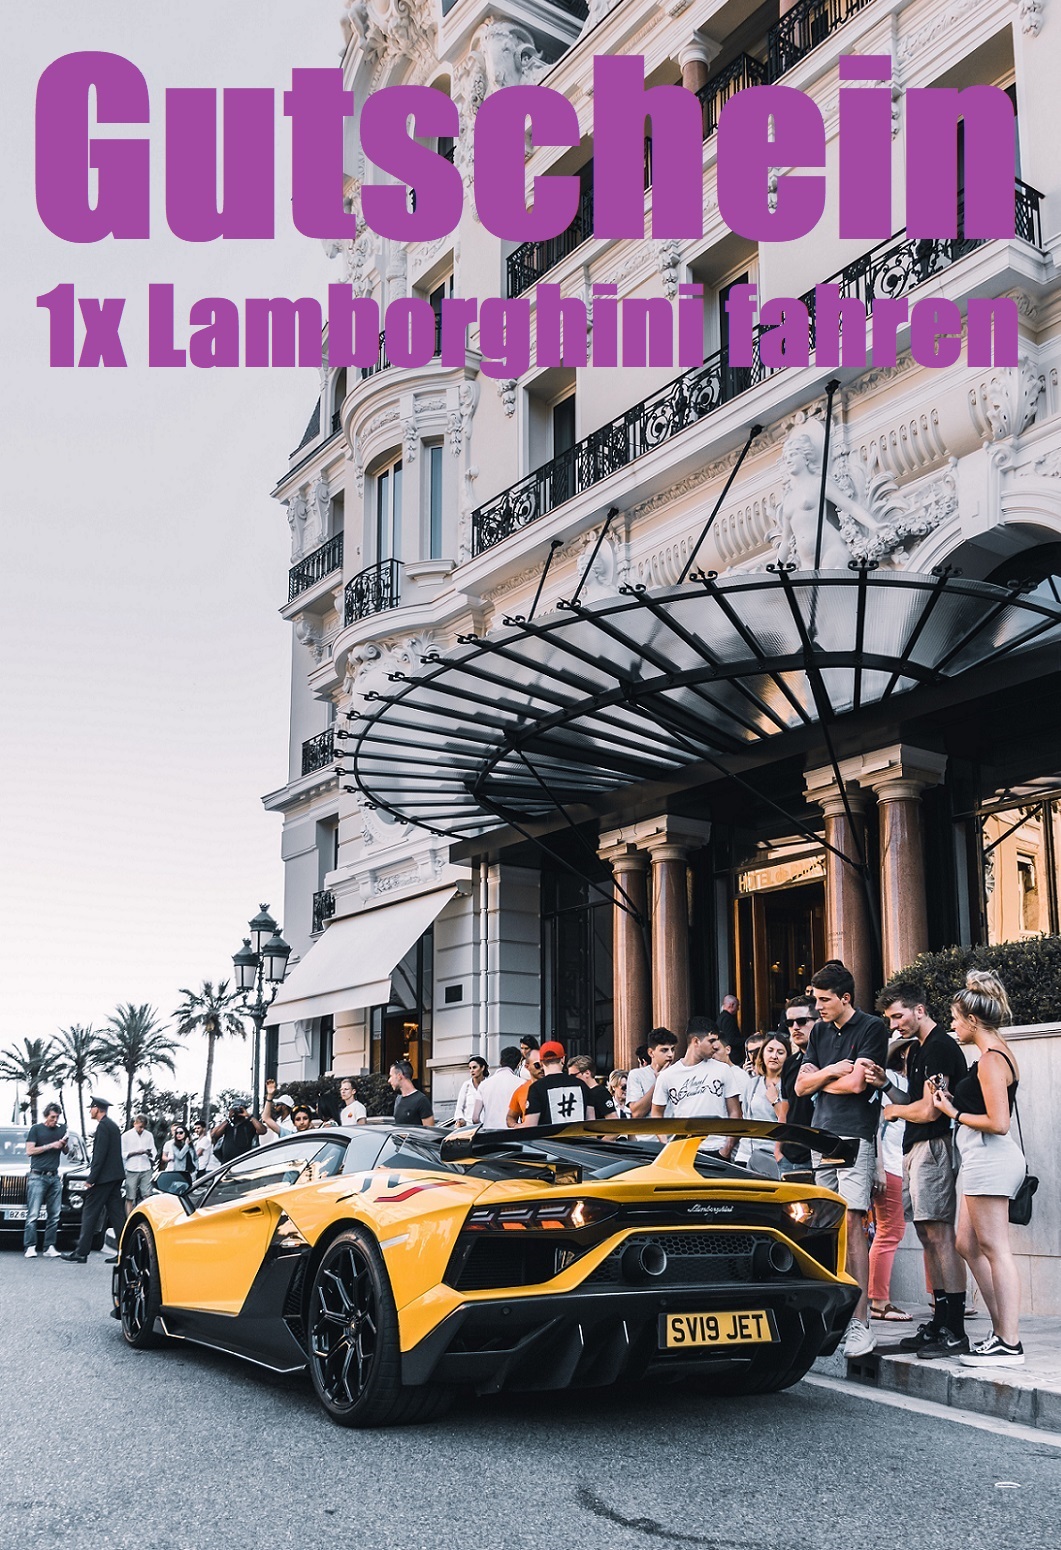 Gutscheinvorlage fürs Lamborghini fahren